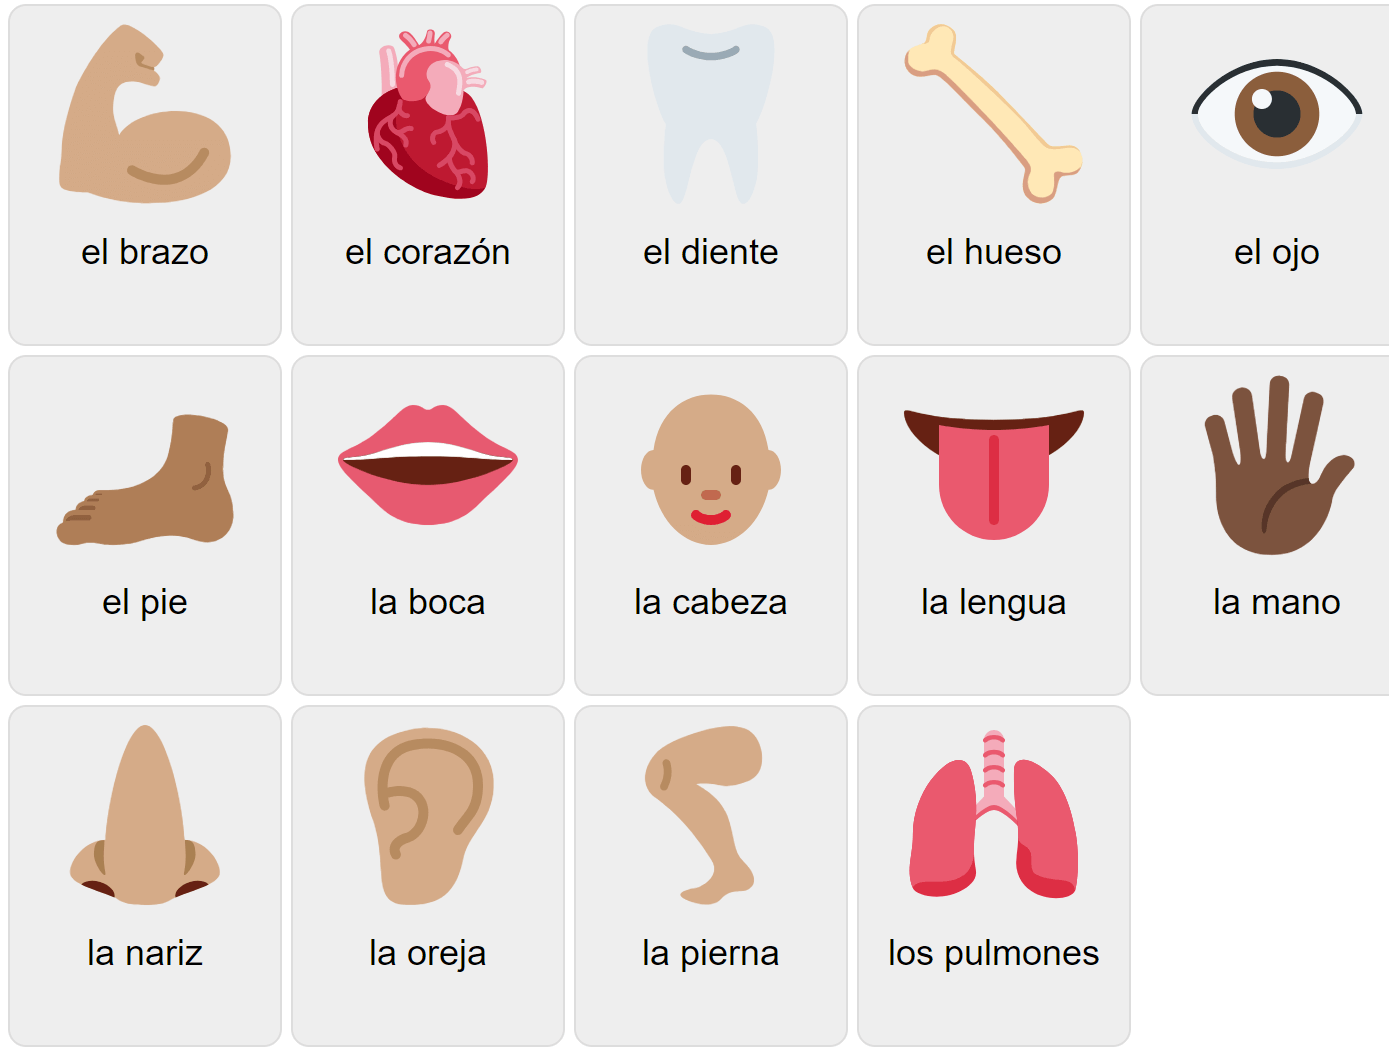 Körperteile auf Spanisch